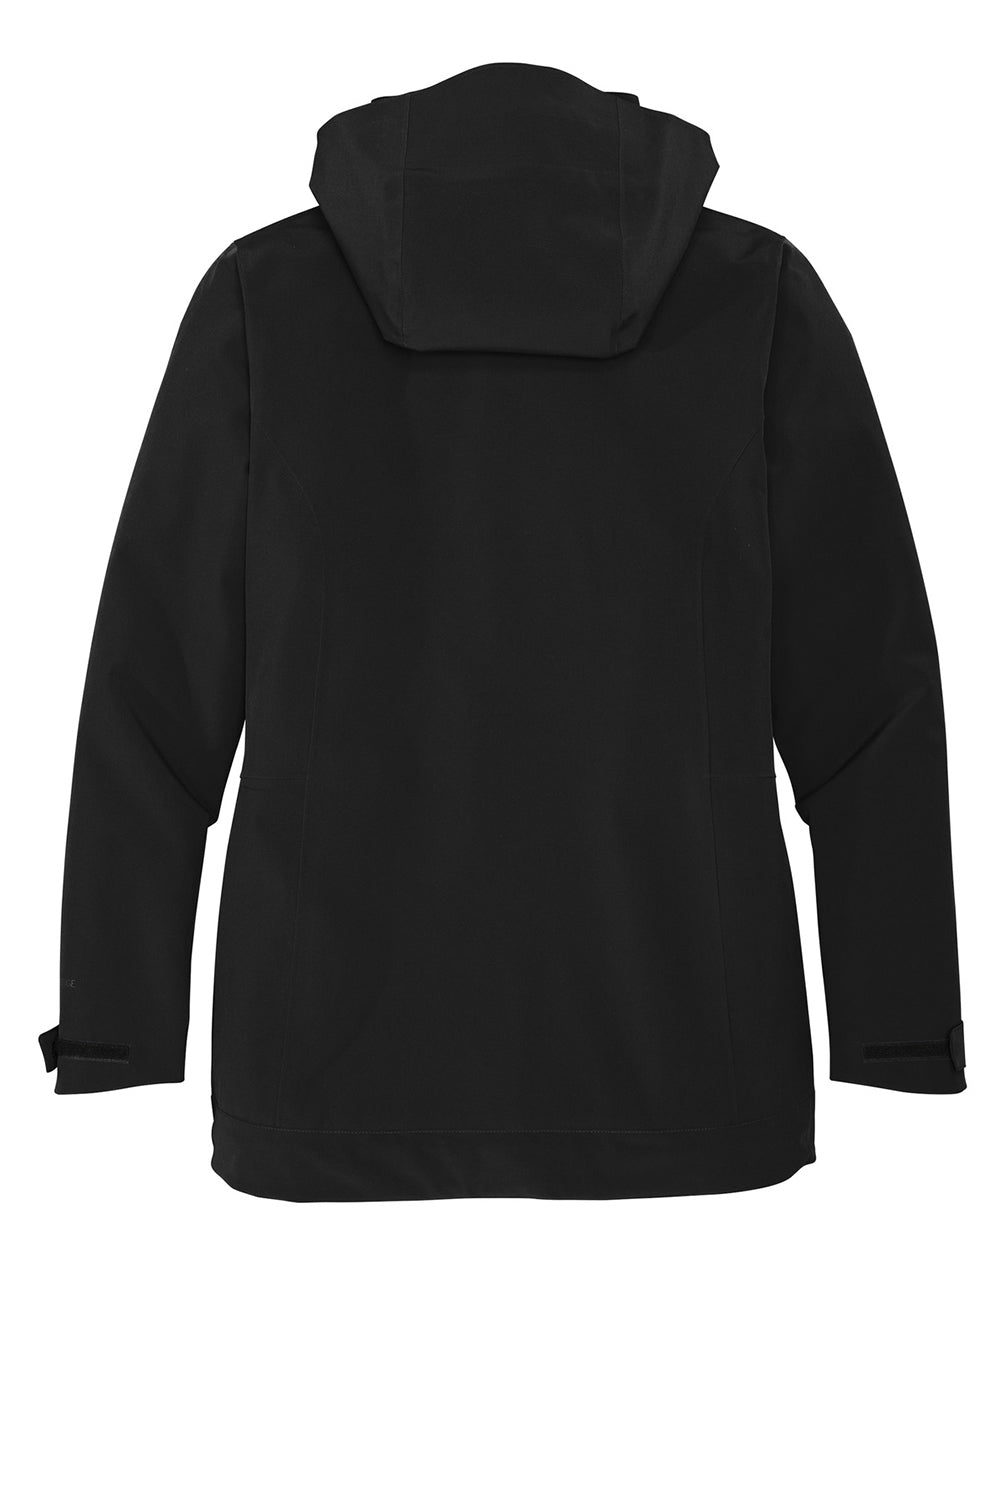 Eddie Bauer EB657 Womens WeatherEdge 3-in-1 Water Resistant Full Zip Hooded Jacket Black/Storm Grey Flat Back